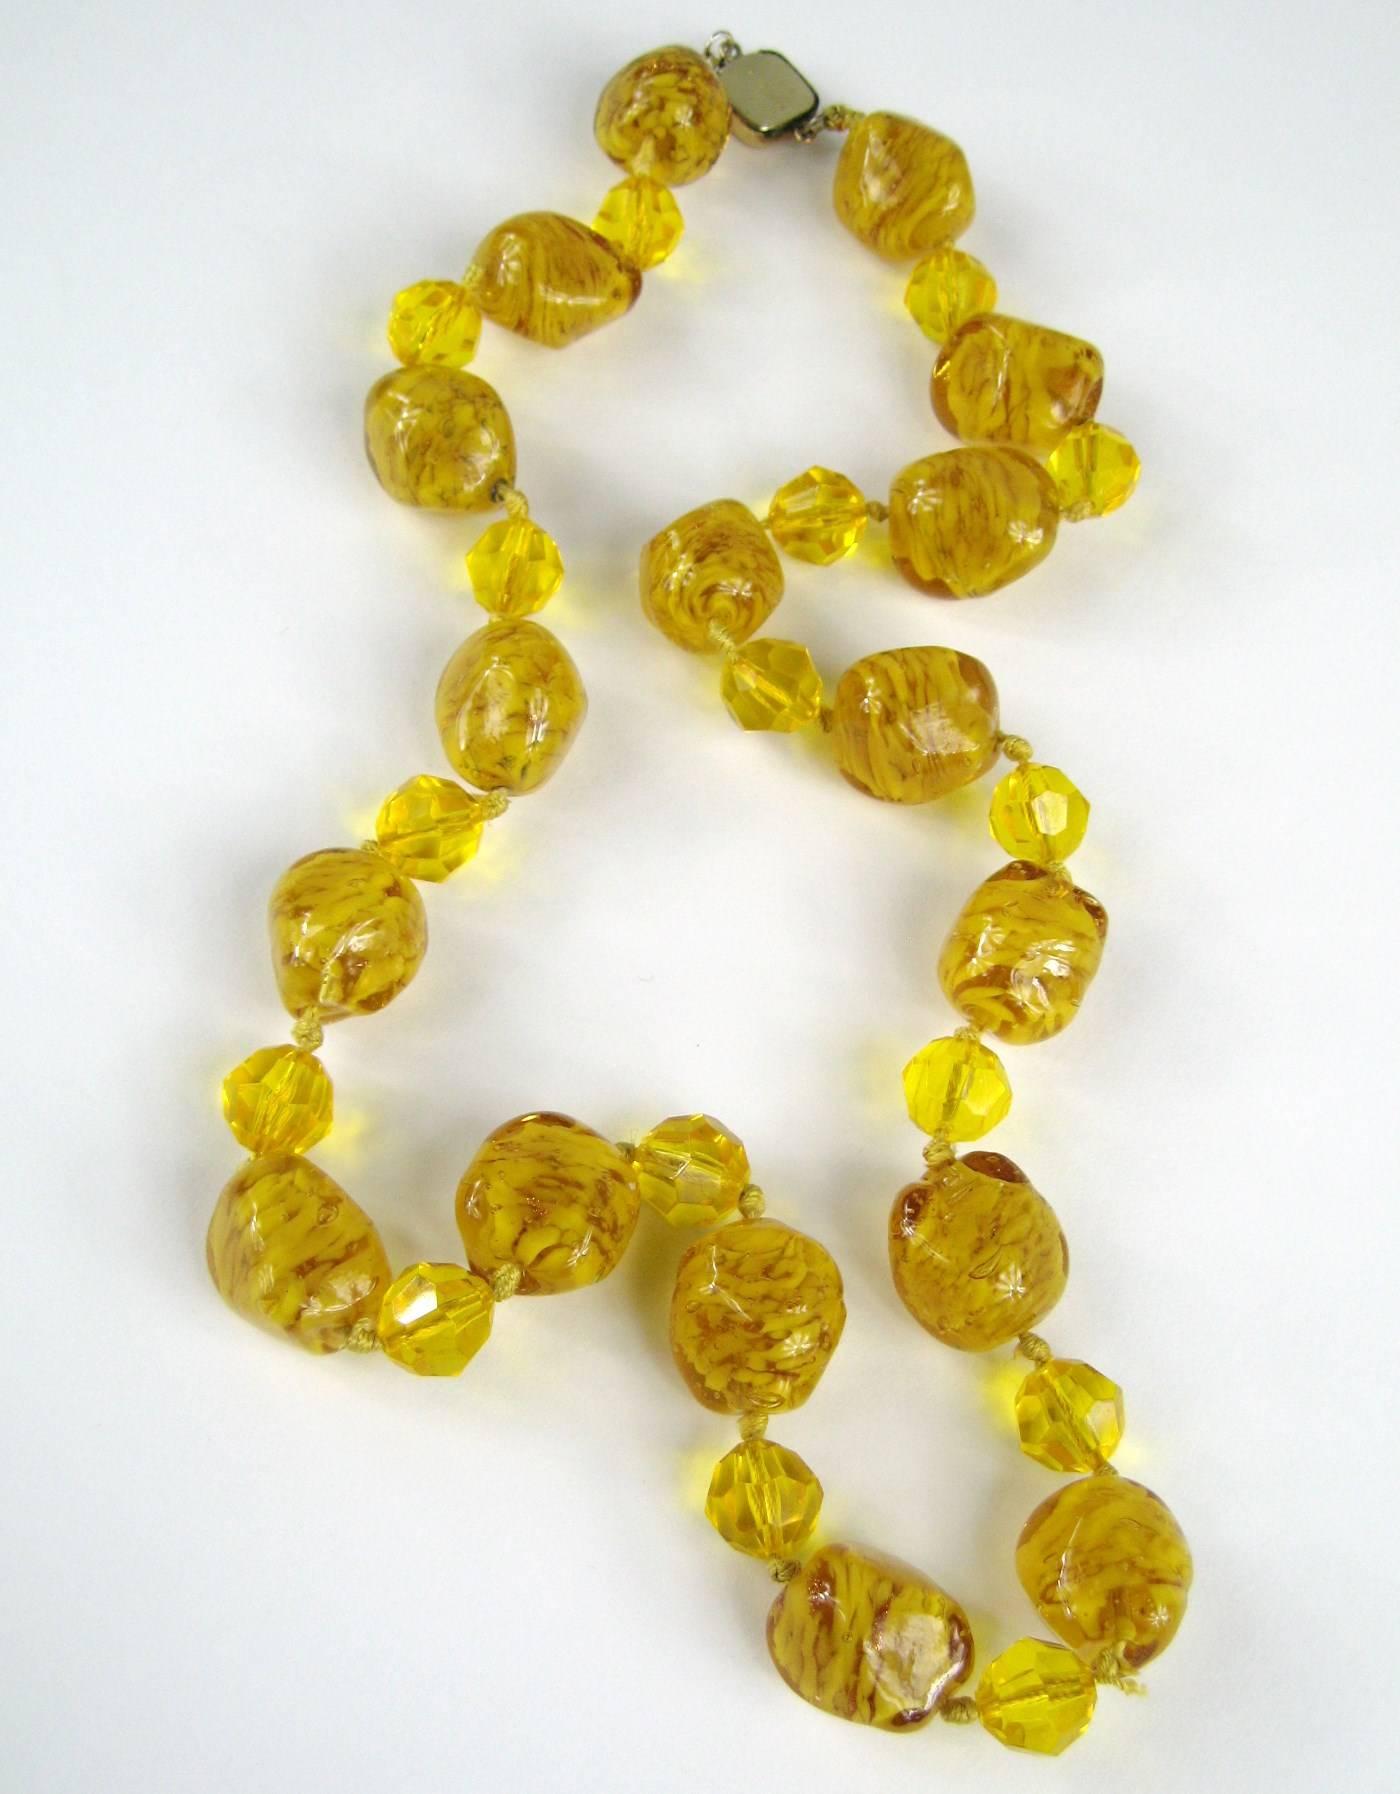 Superbe collier de perles de verre vénitiennes dorées à l'or fin. Ce collier sera remarqué, il comporte d'énormes perles en verre vénitien, toutes nouées à la main. De grosses perles composent ce magnifique collier en deux tailles différentes, les